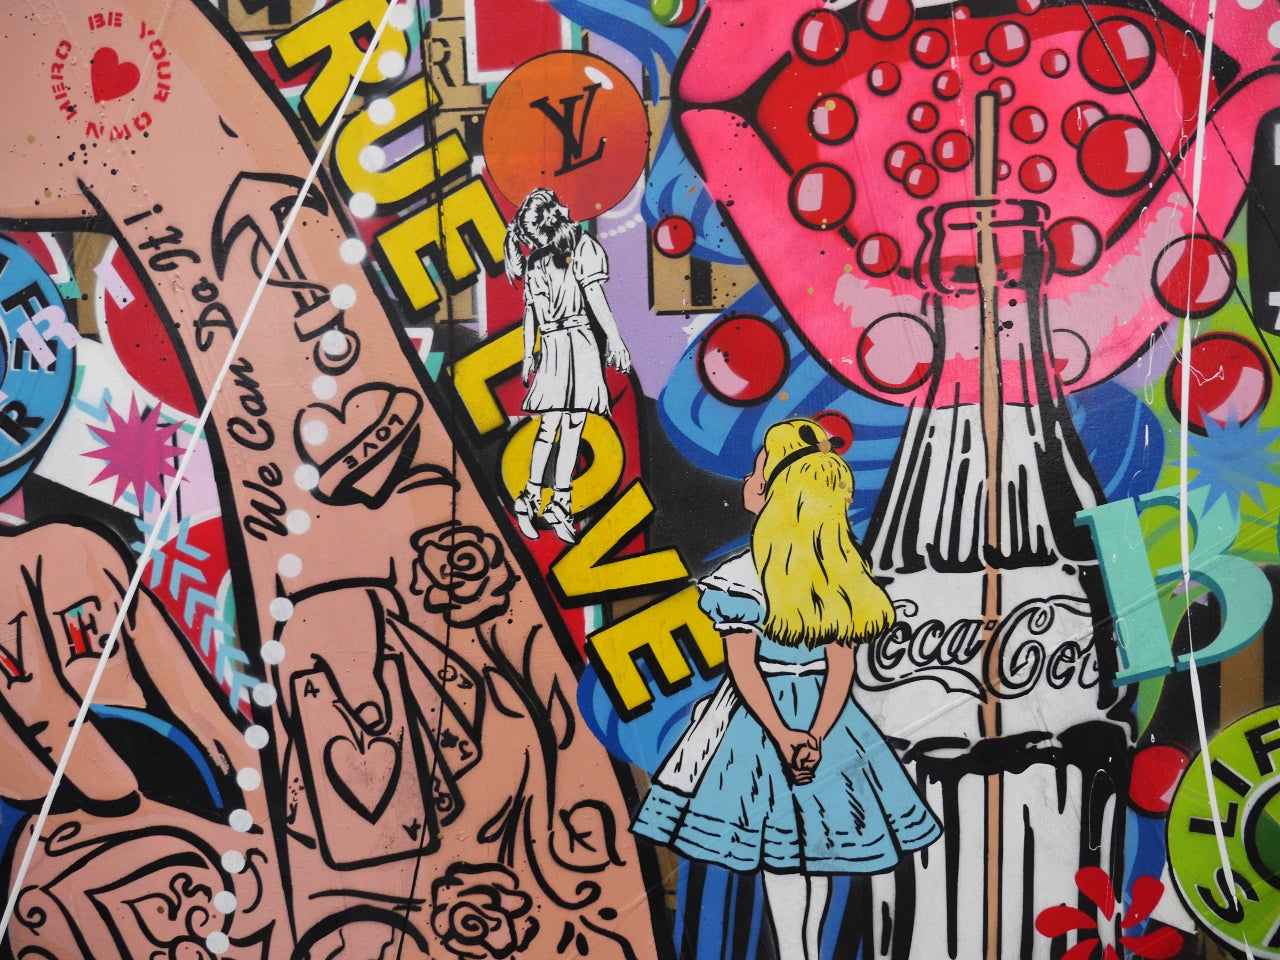 Rosie Rapture 190cm x 100cm Rosie the Riveter Textured Urban Pop Art Painting (SOLD)